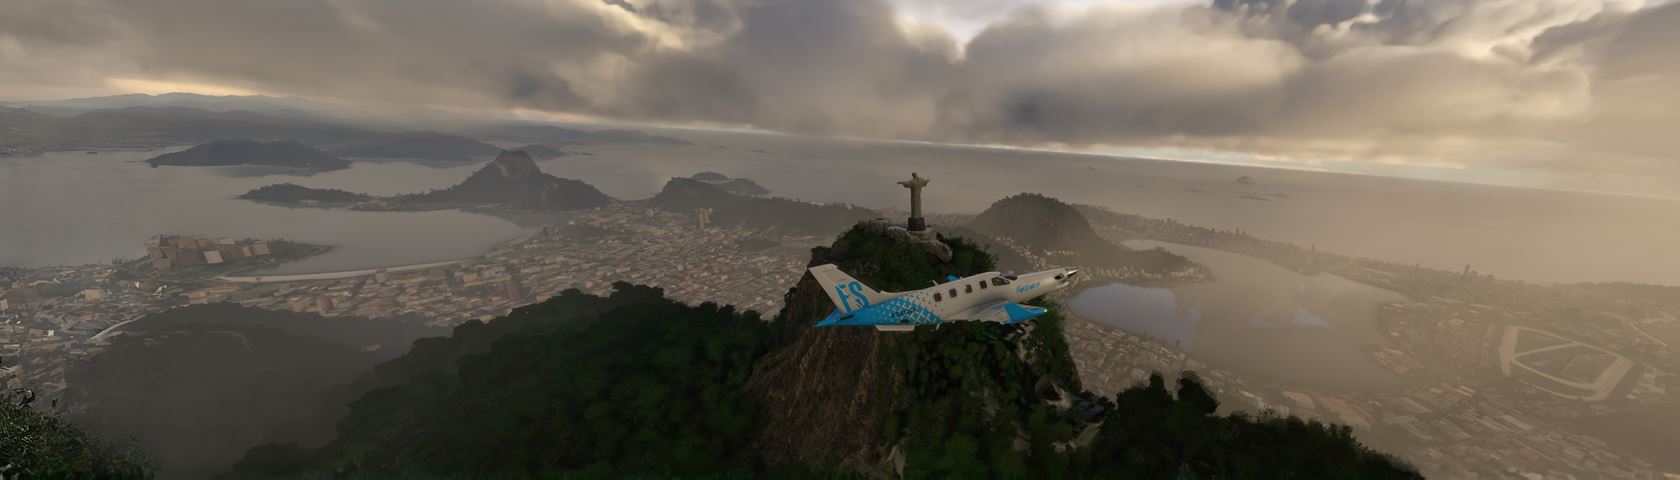 FS2020 Rio de Janeiro